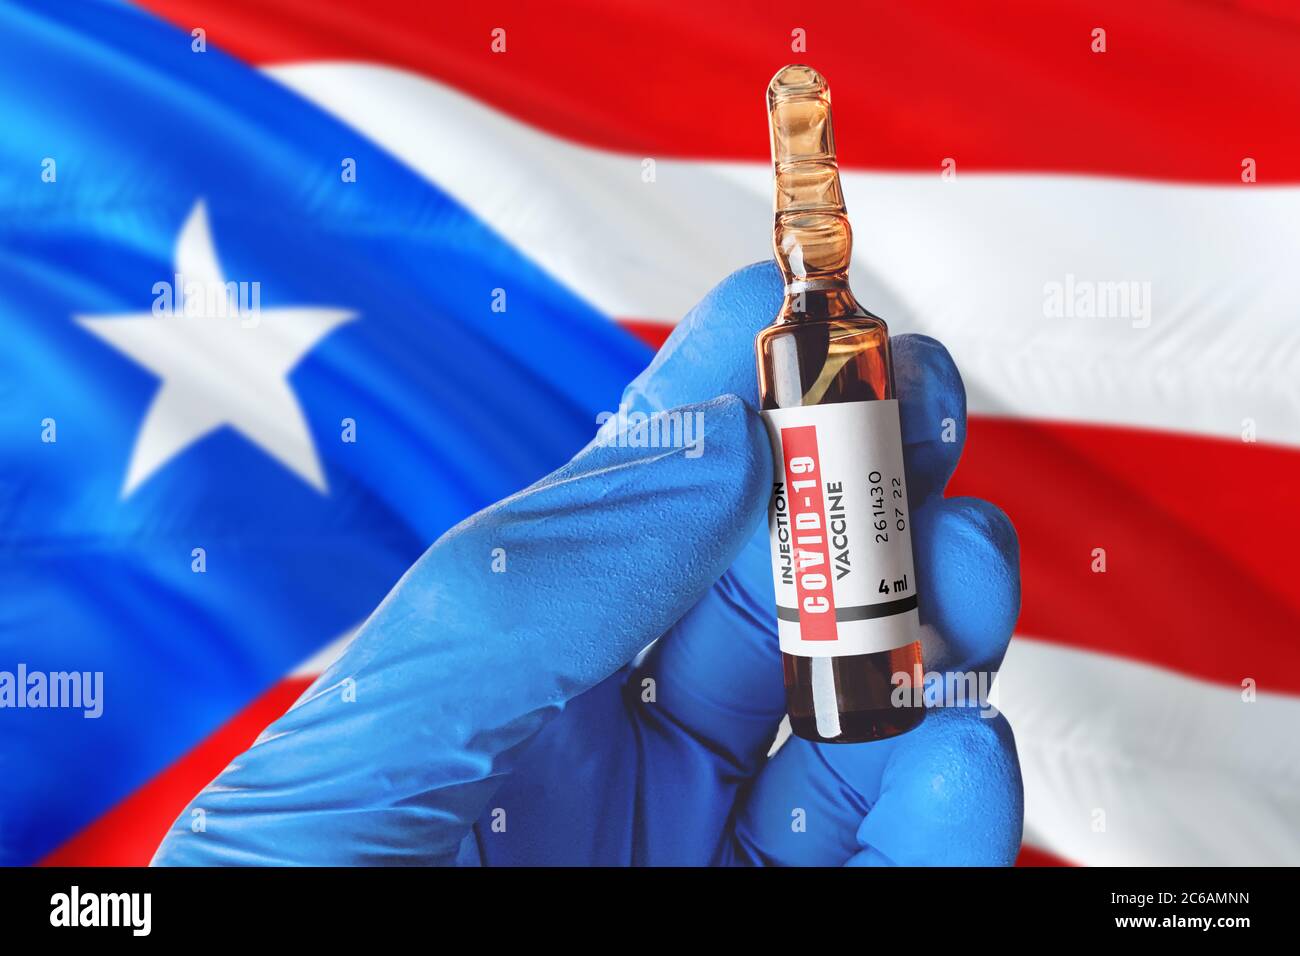 Puerto Rico Flagge mit Coronavirus Covid-19 Konzept. Arzt mit blauen Schutz medizinische Handschuhe hält eine Impfstoffflasche. Coronavirus covid 19 Impfstoff re Stockfoto